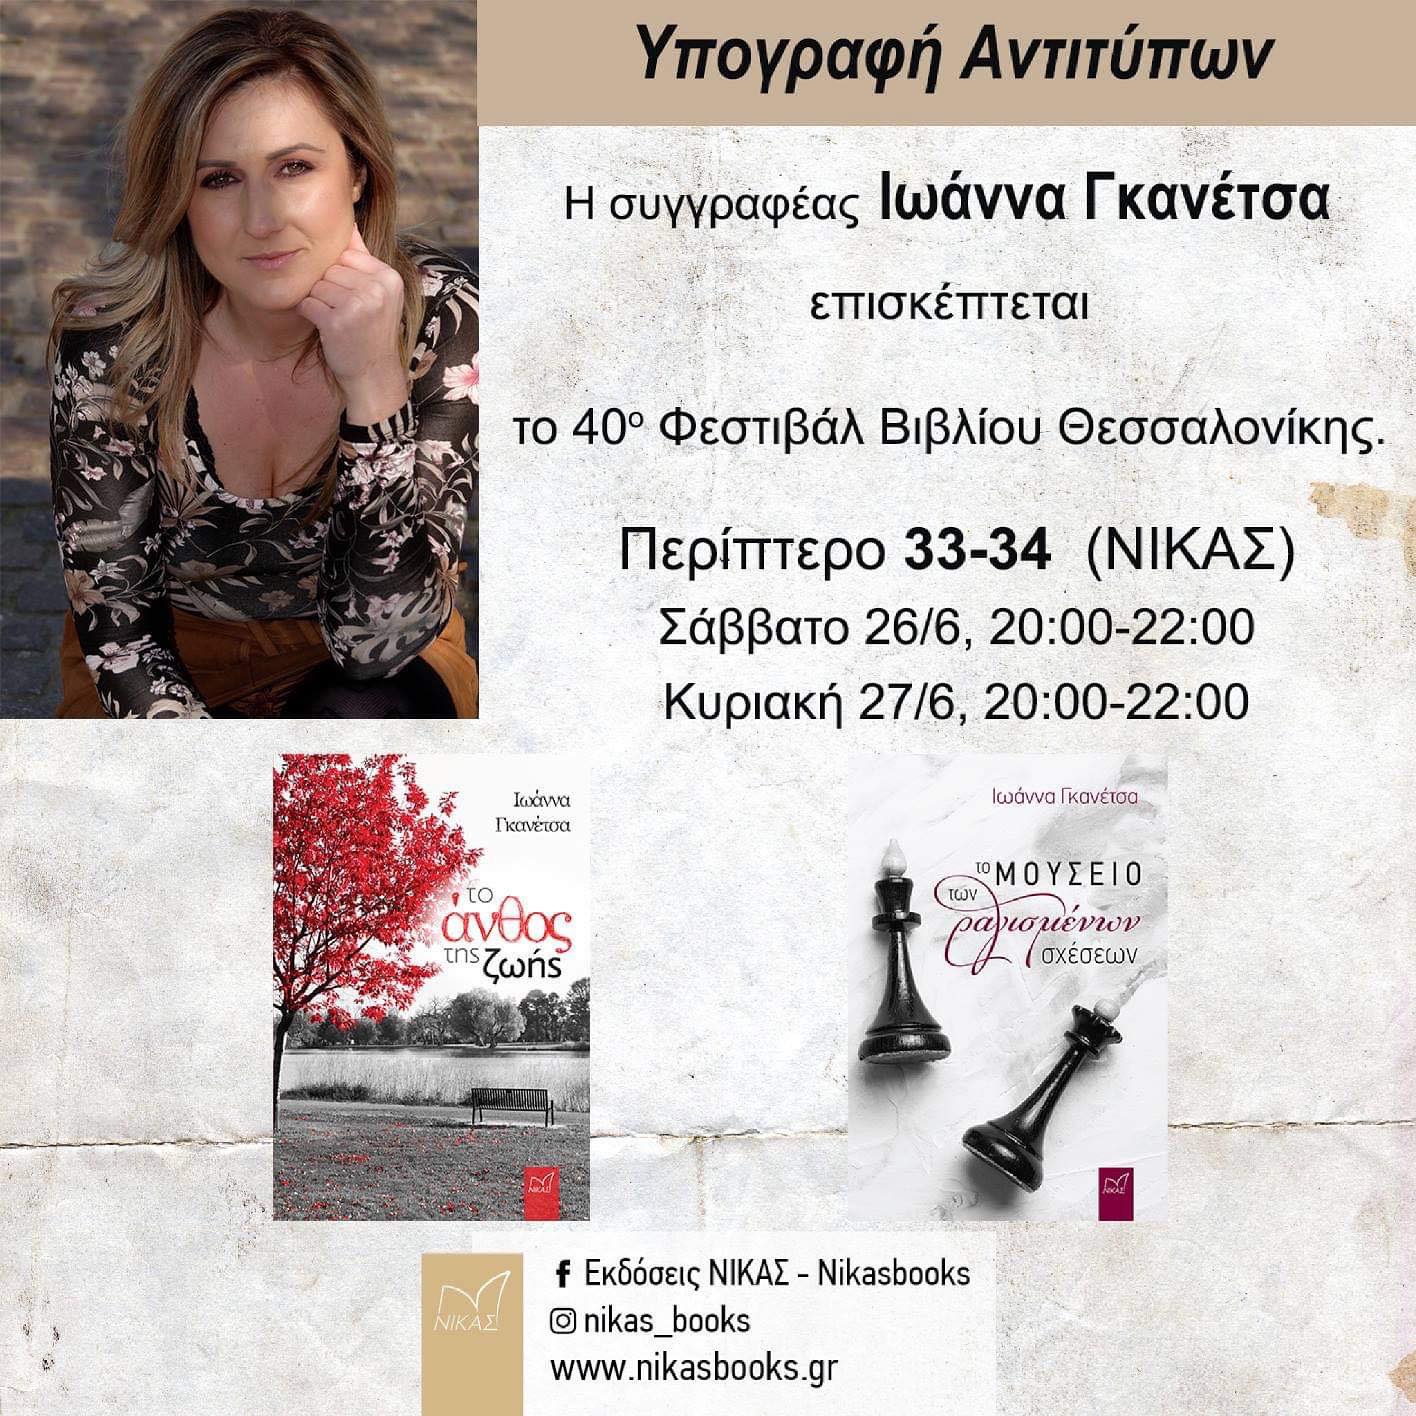 Η αγαπημένη μας συγγραφέας Ιωάννα Γκανέτσα στο 40ο Φεστιβάλ Βιβλίου Θεσσαλονίκης